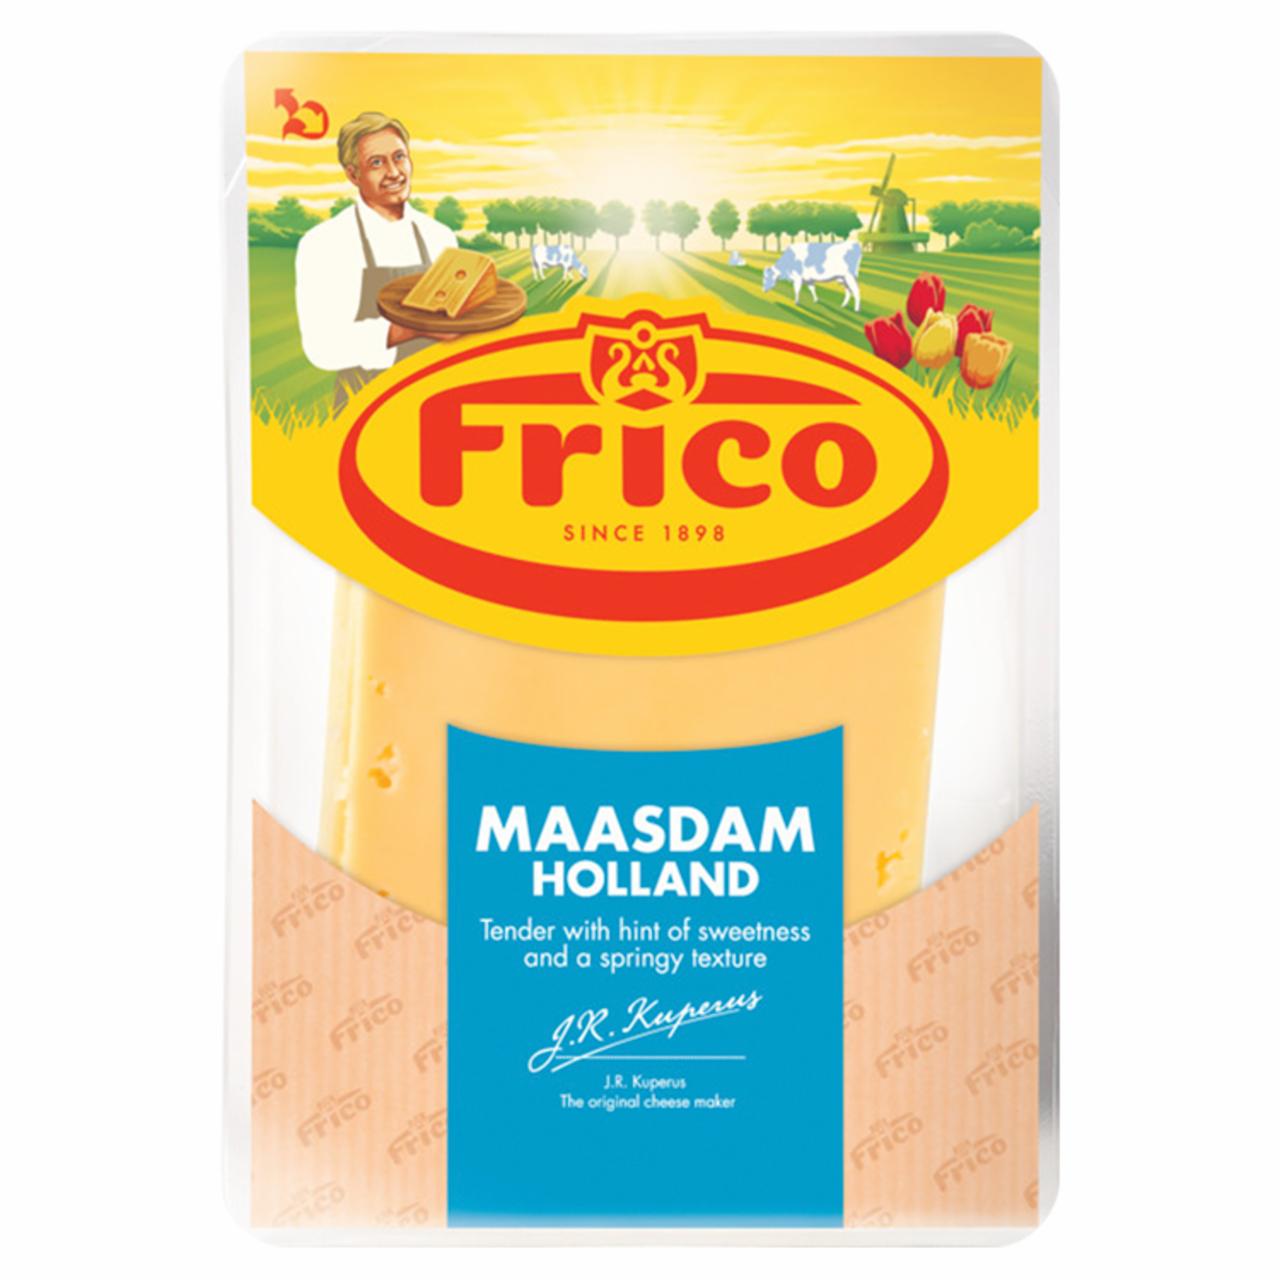 Képek - Frico Maasdam szeletelt sajt 100 g